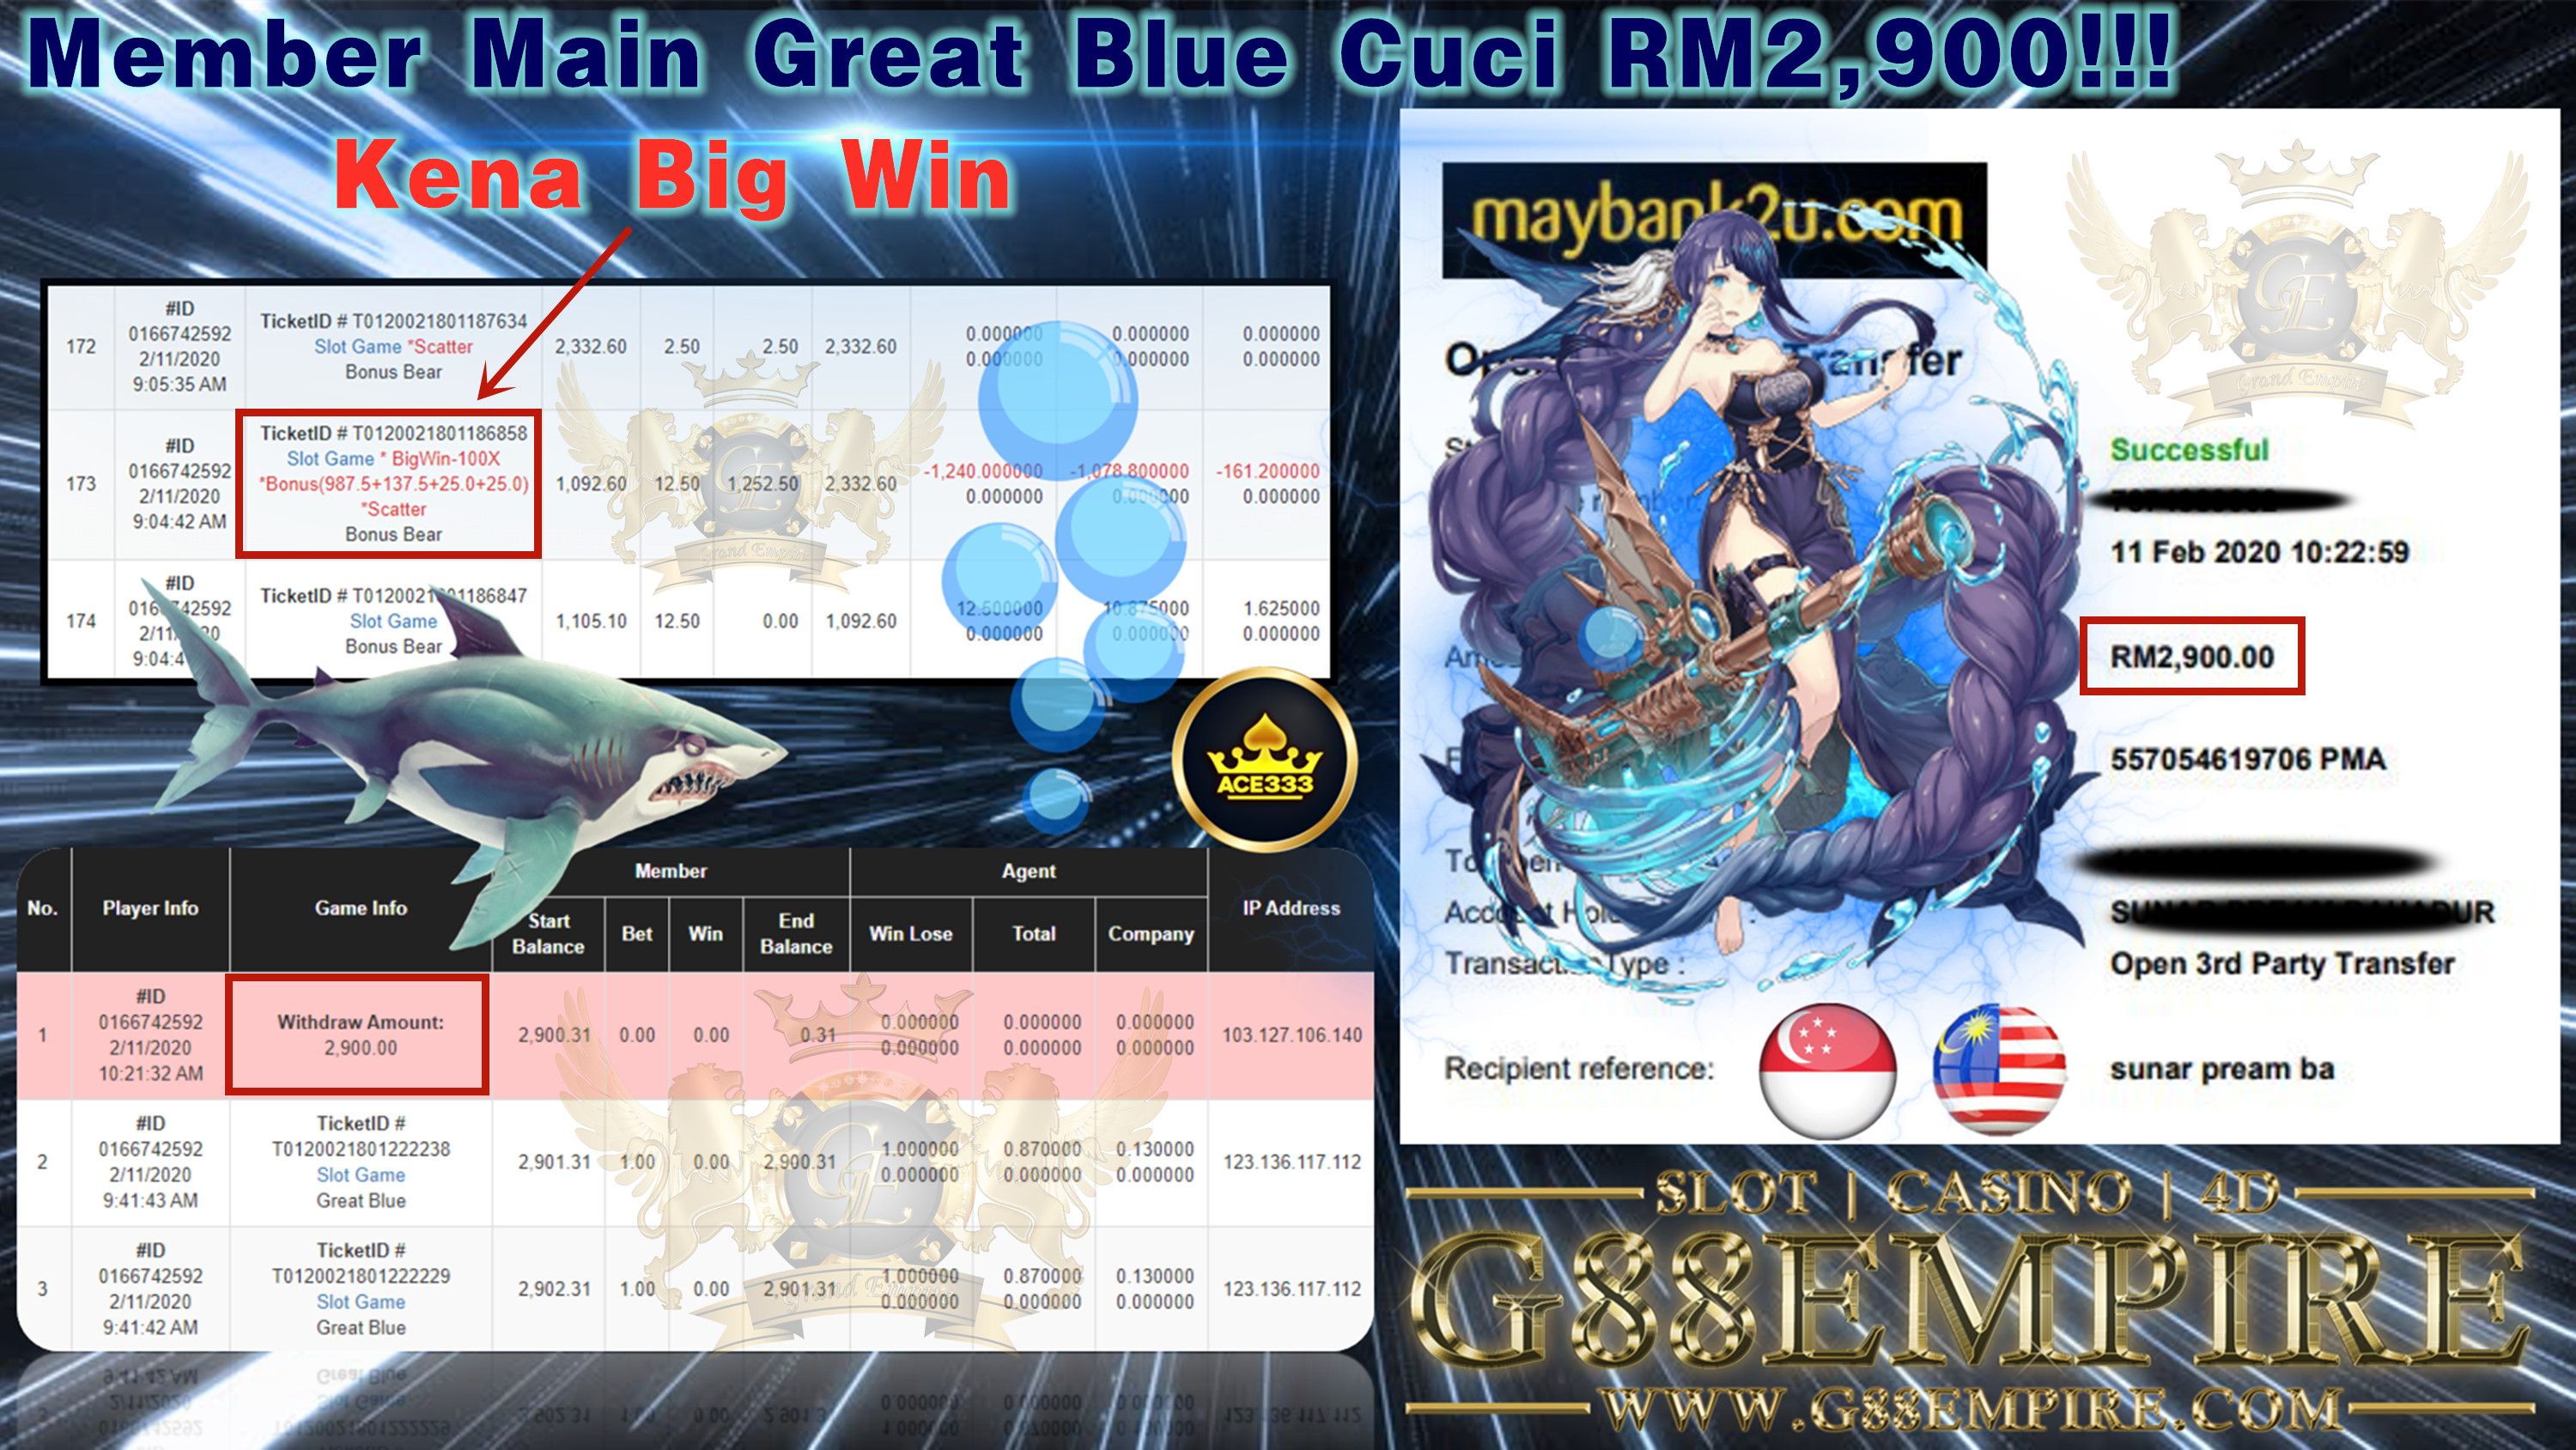 MEMBER MAIN GREAT BLUE CUCI RM2,900!!!